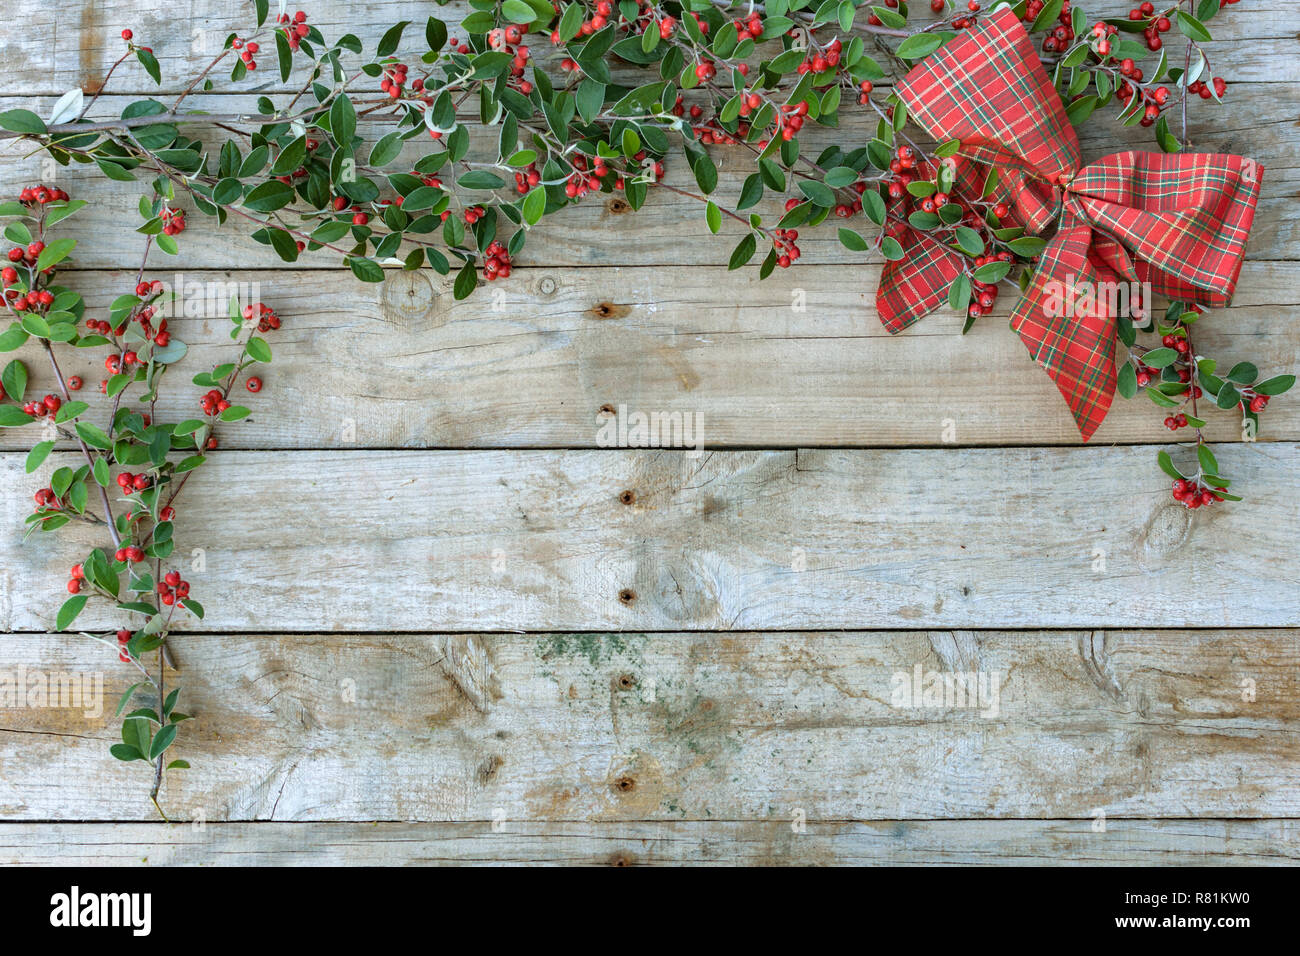 Image de carte postale de Noël sur fond de bois. Pour la carte de vœux. Les feuilles vertes avec des baies. Fond d'Chrismtastime,Noël. Banque D'Images